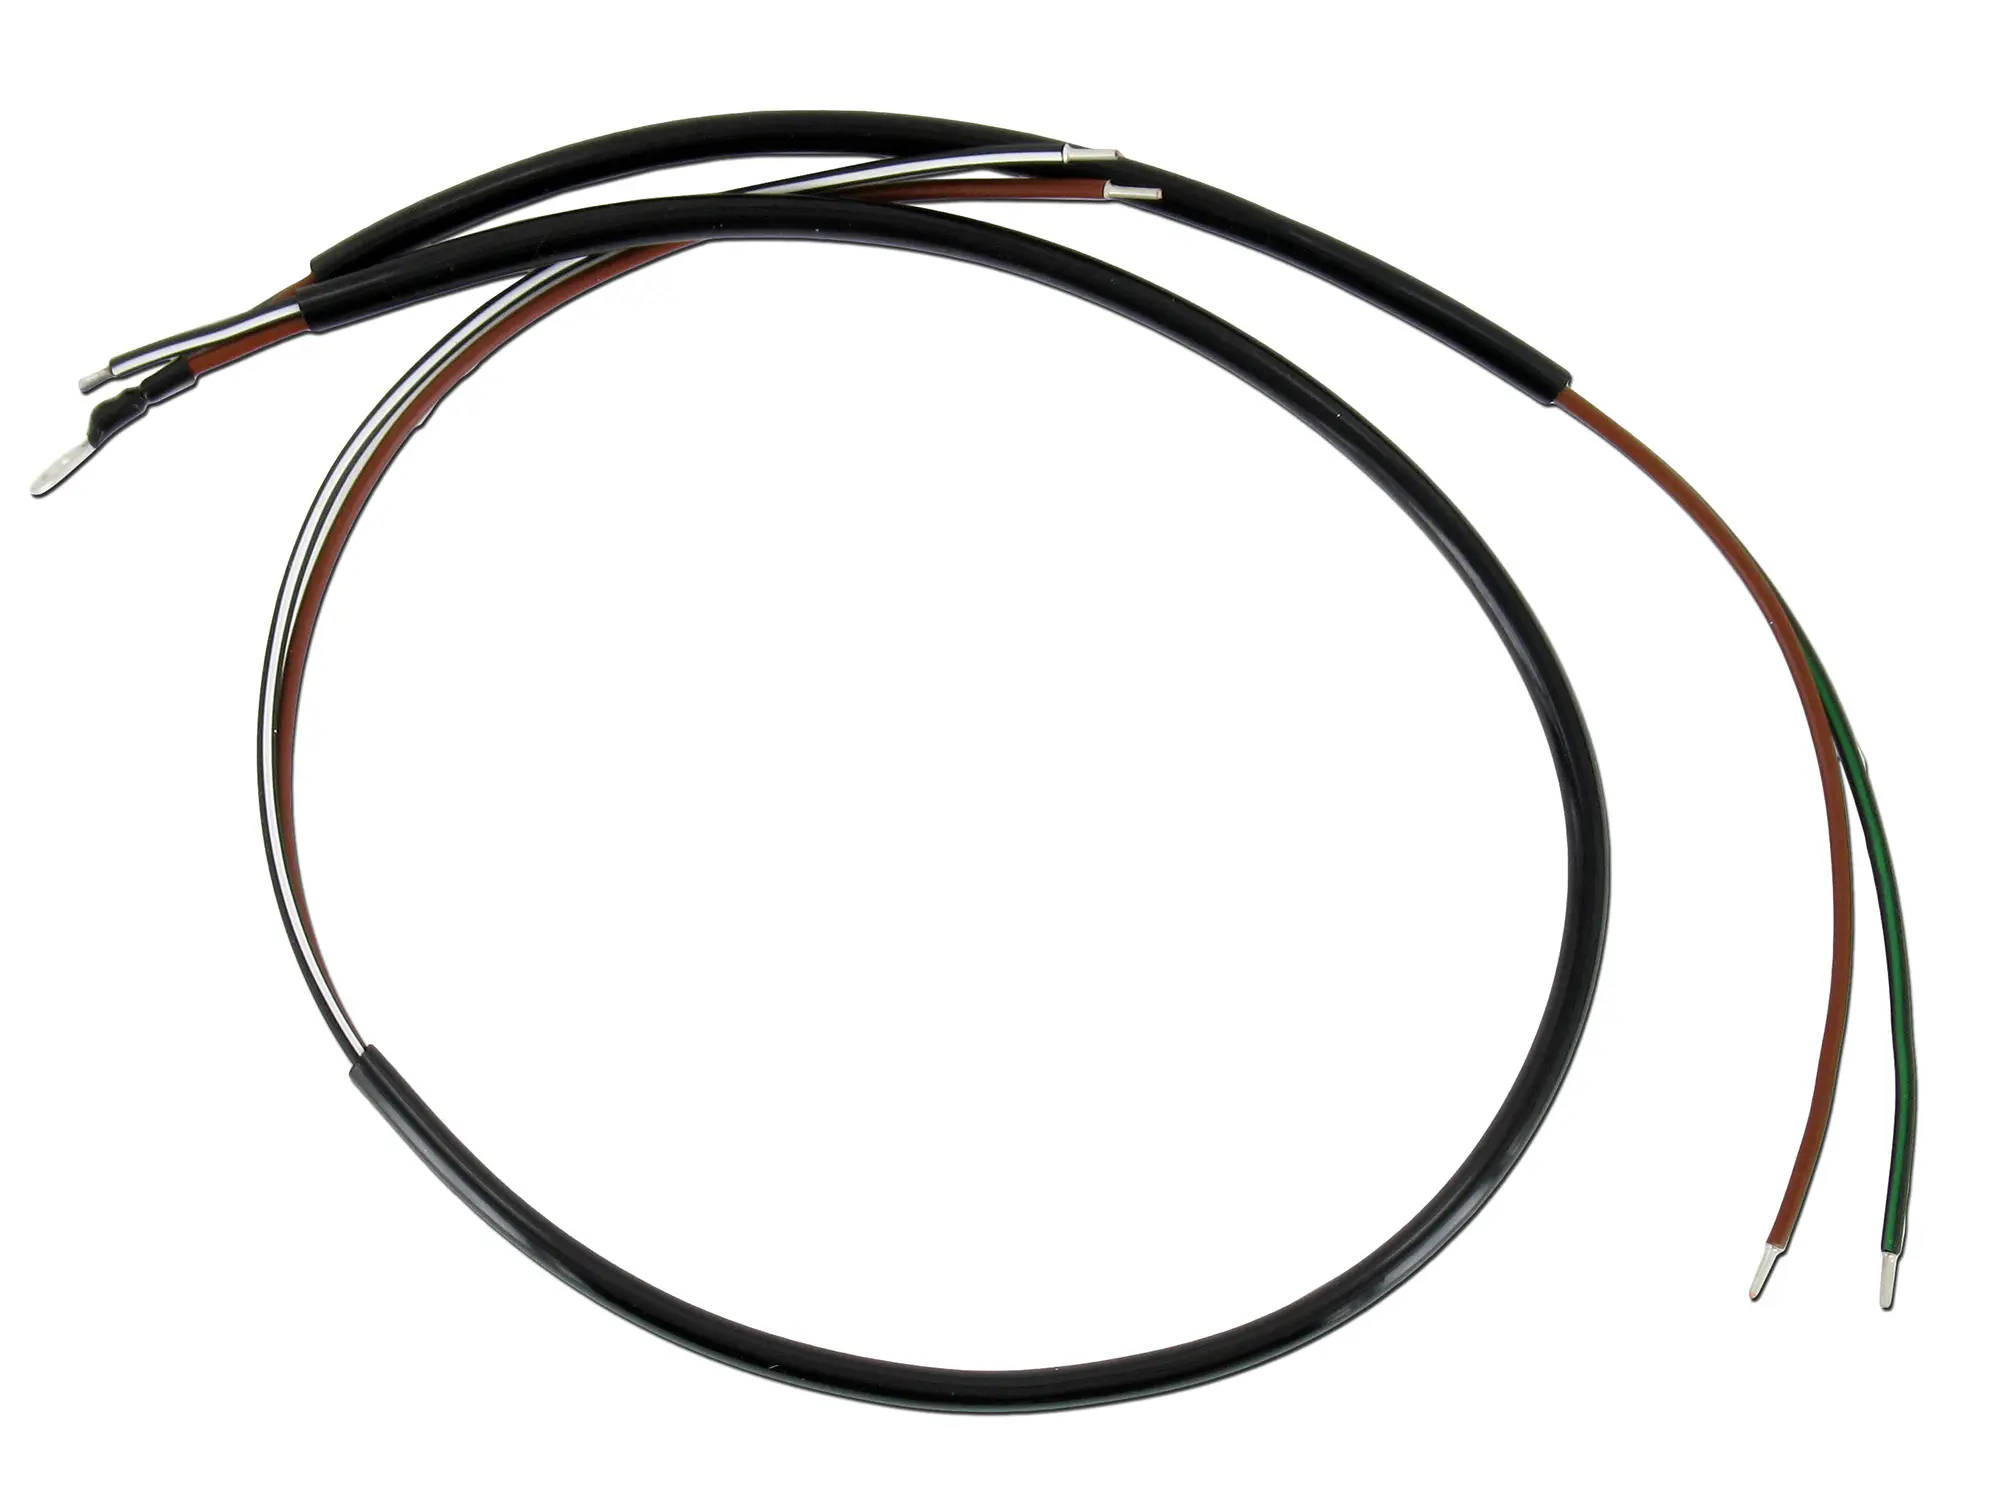 Kabel Leerlaufkabel KR51 SR4-3 KR51/1 SR4-2 SR4-4 